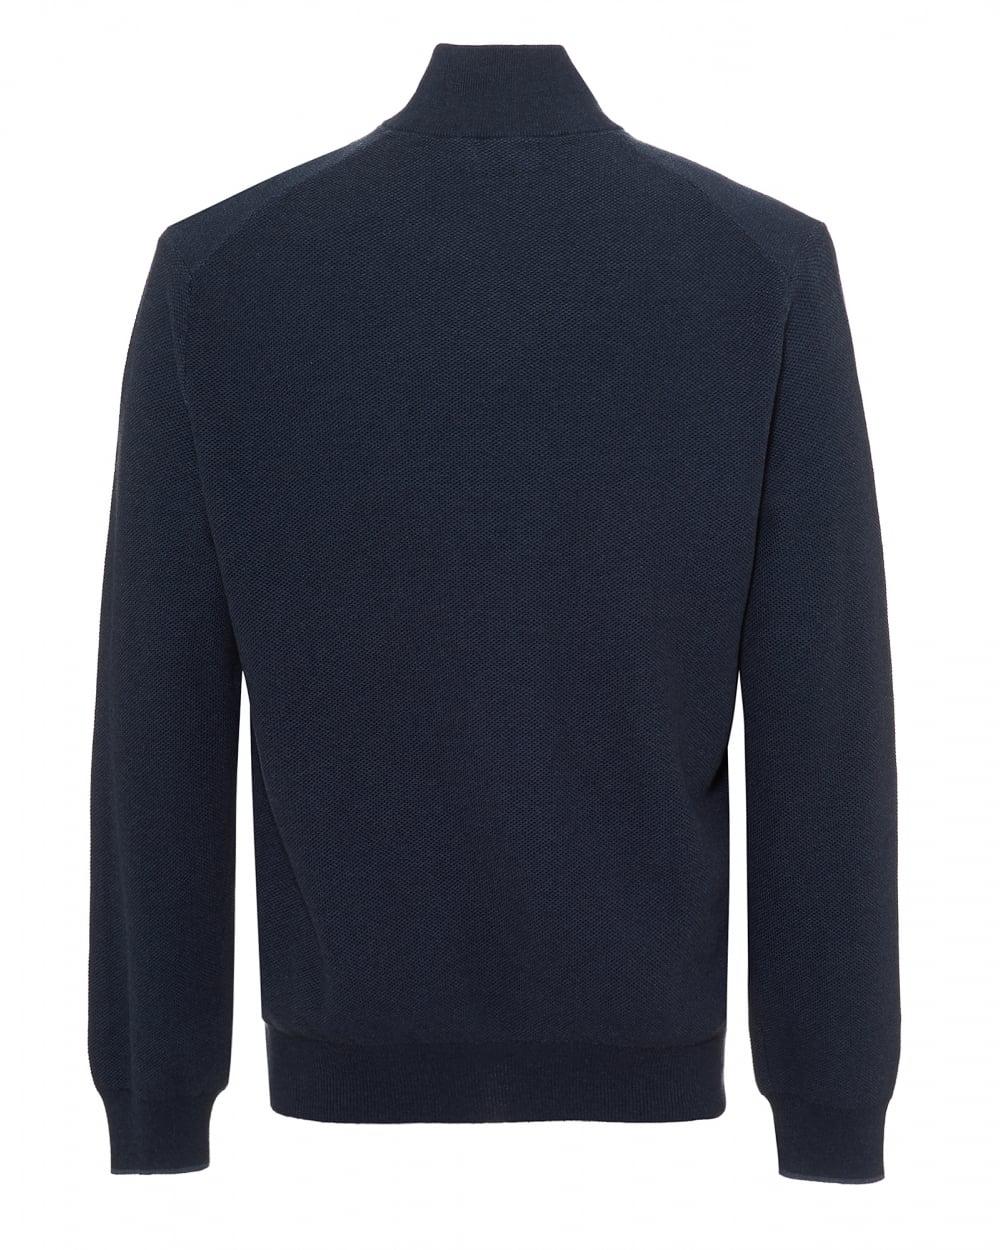 Ralph Lauren Cotton Quarter Zip Jumper, Navy Blue Sweater for Men - Lyst